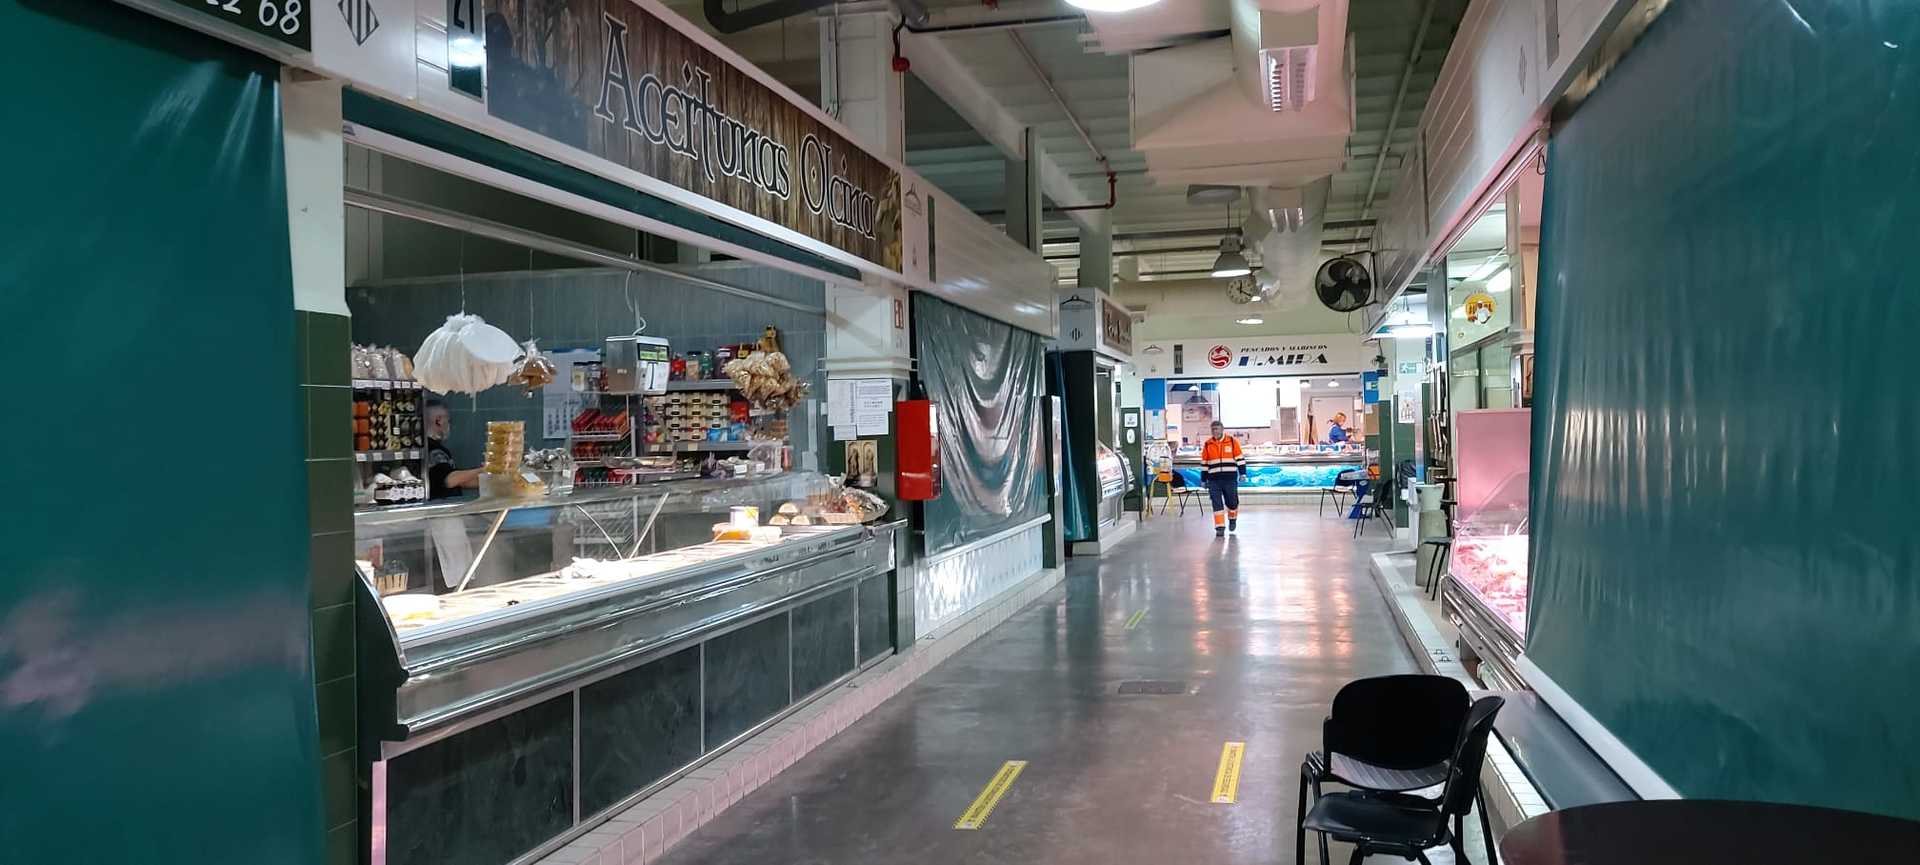 Mercado de San Mateo de Alcoy